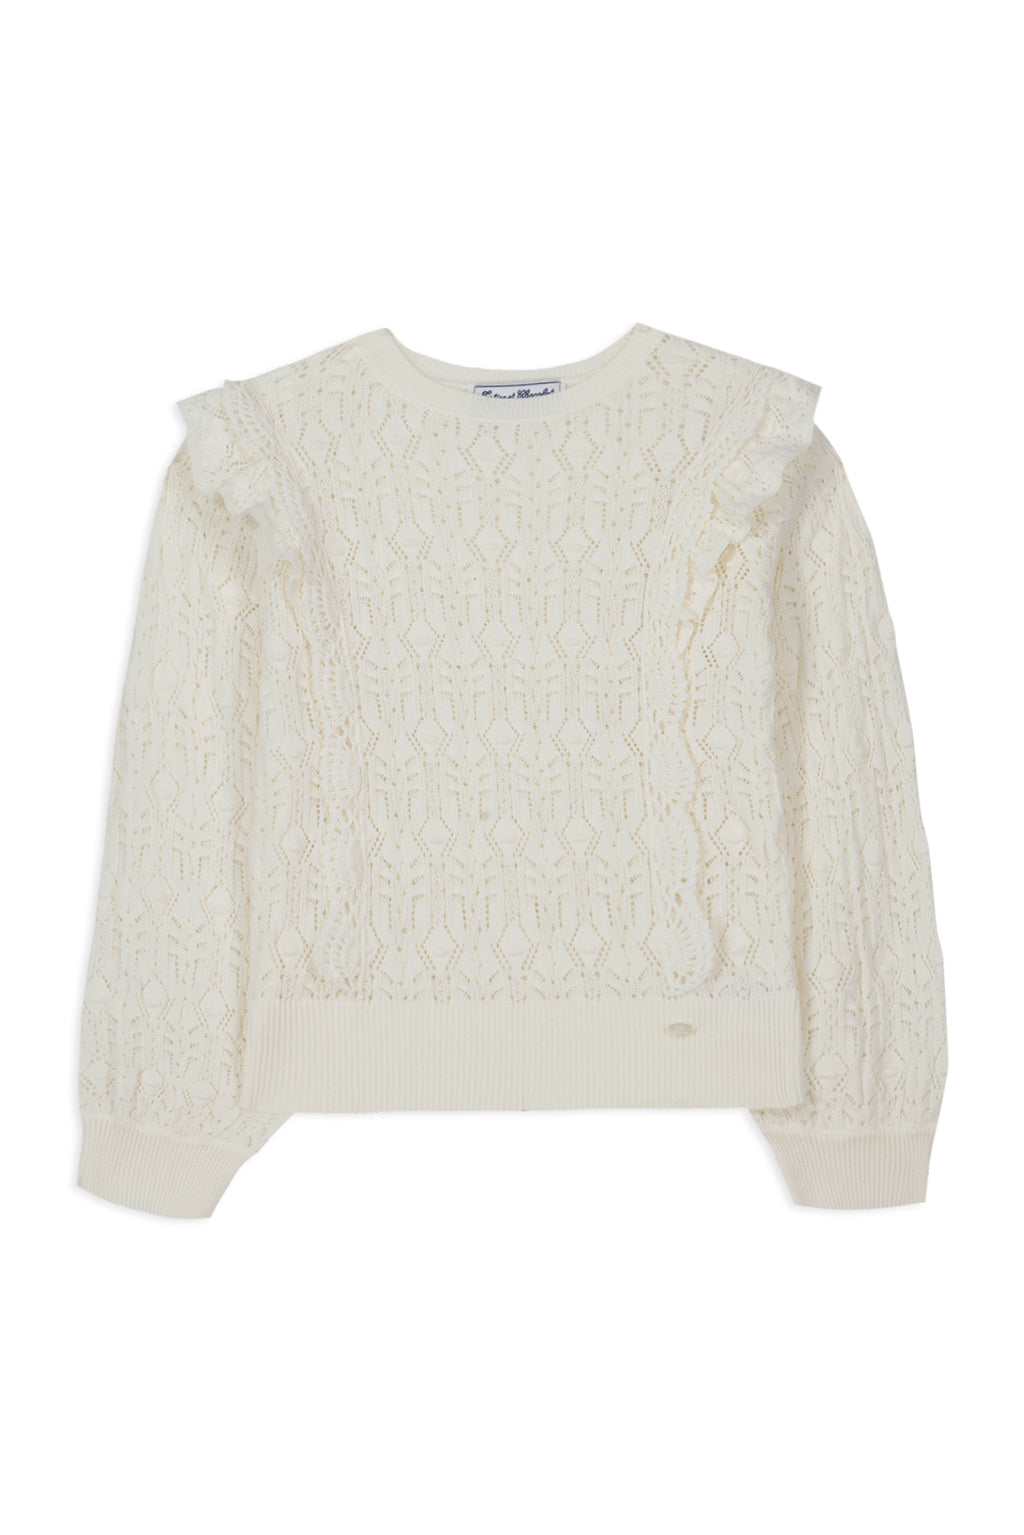 Sweater - White Ruffles